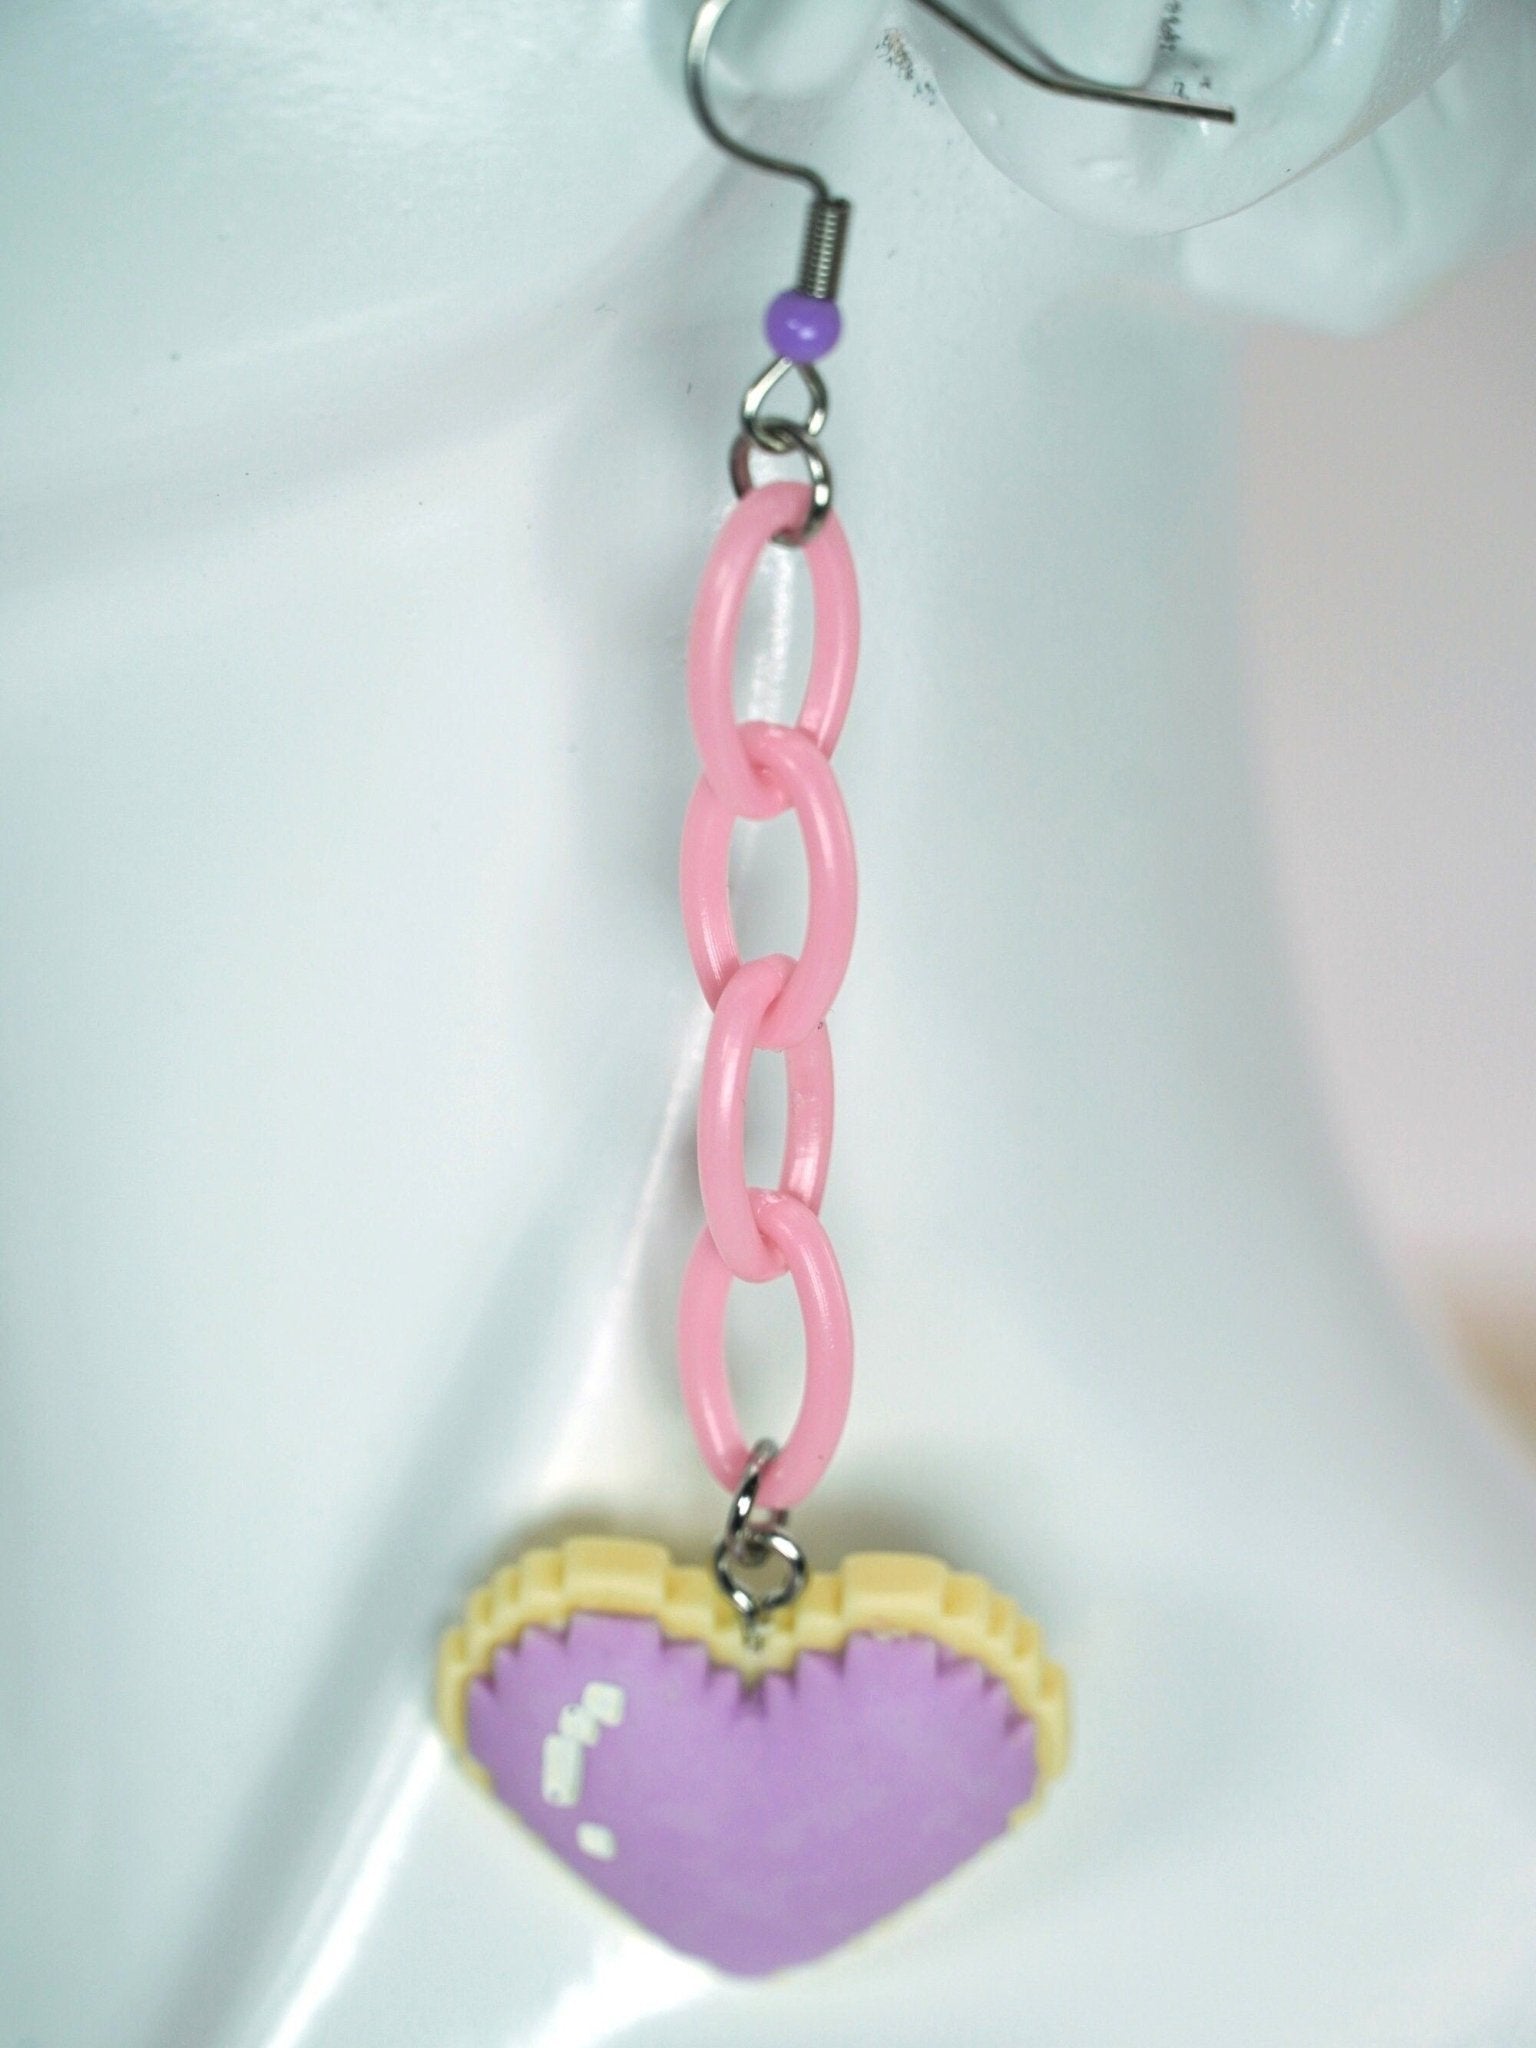 Kawaii Lavender Pixel Cookie Heart Earrings, Handmade Long Dangle Drop Earrings - Dekowaii Jewelry Company